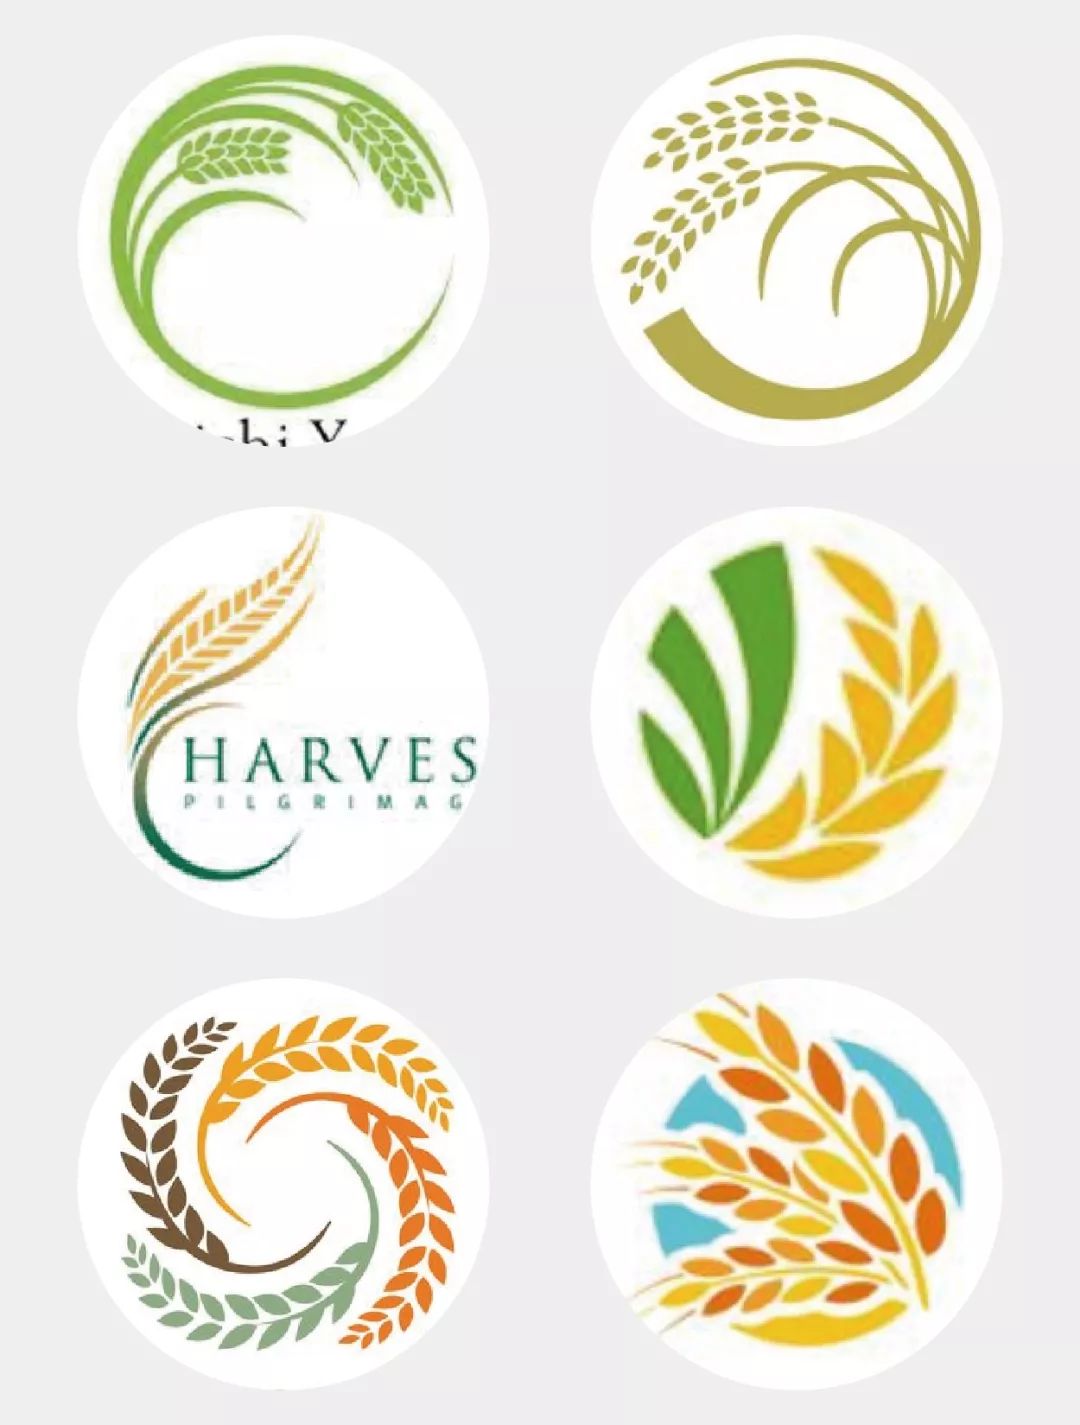 如何3步做出农产品logo,并让一般人觉得吃不起?